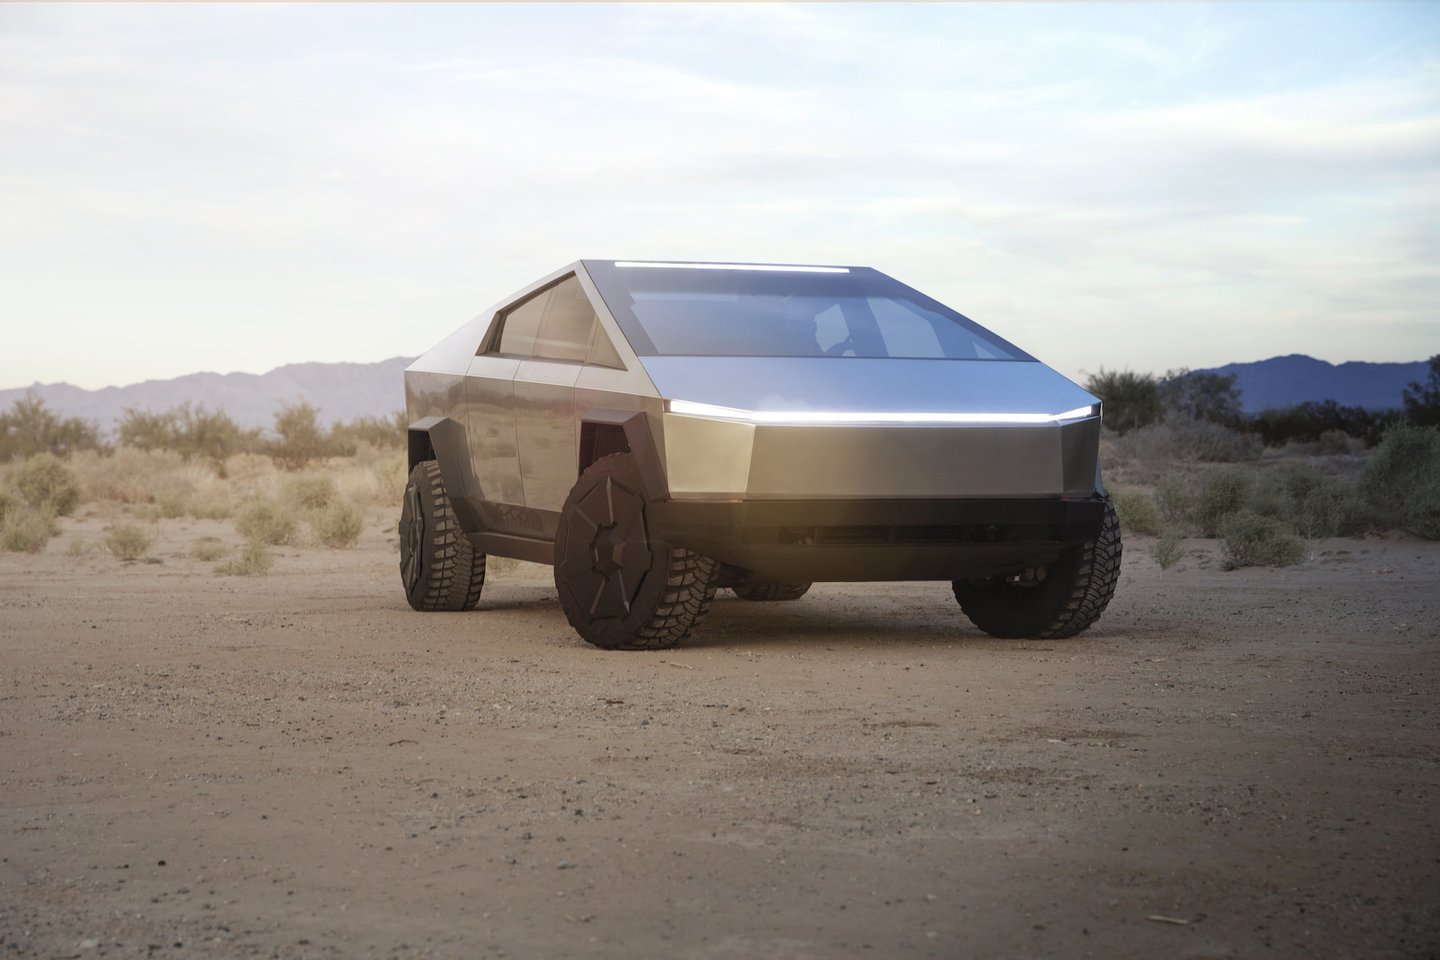  „Tesla Cybertruck“ futuristinis išorės dizainas ir kuriozinė situacija per pristatymą neatgrasė potencialių pirkėjų. <br>Gamintojo nuotr.